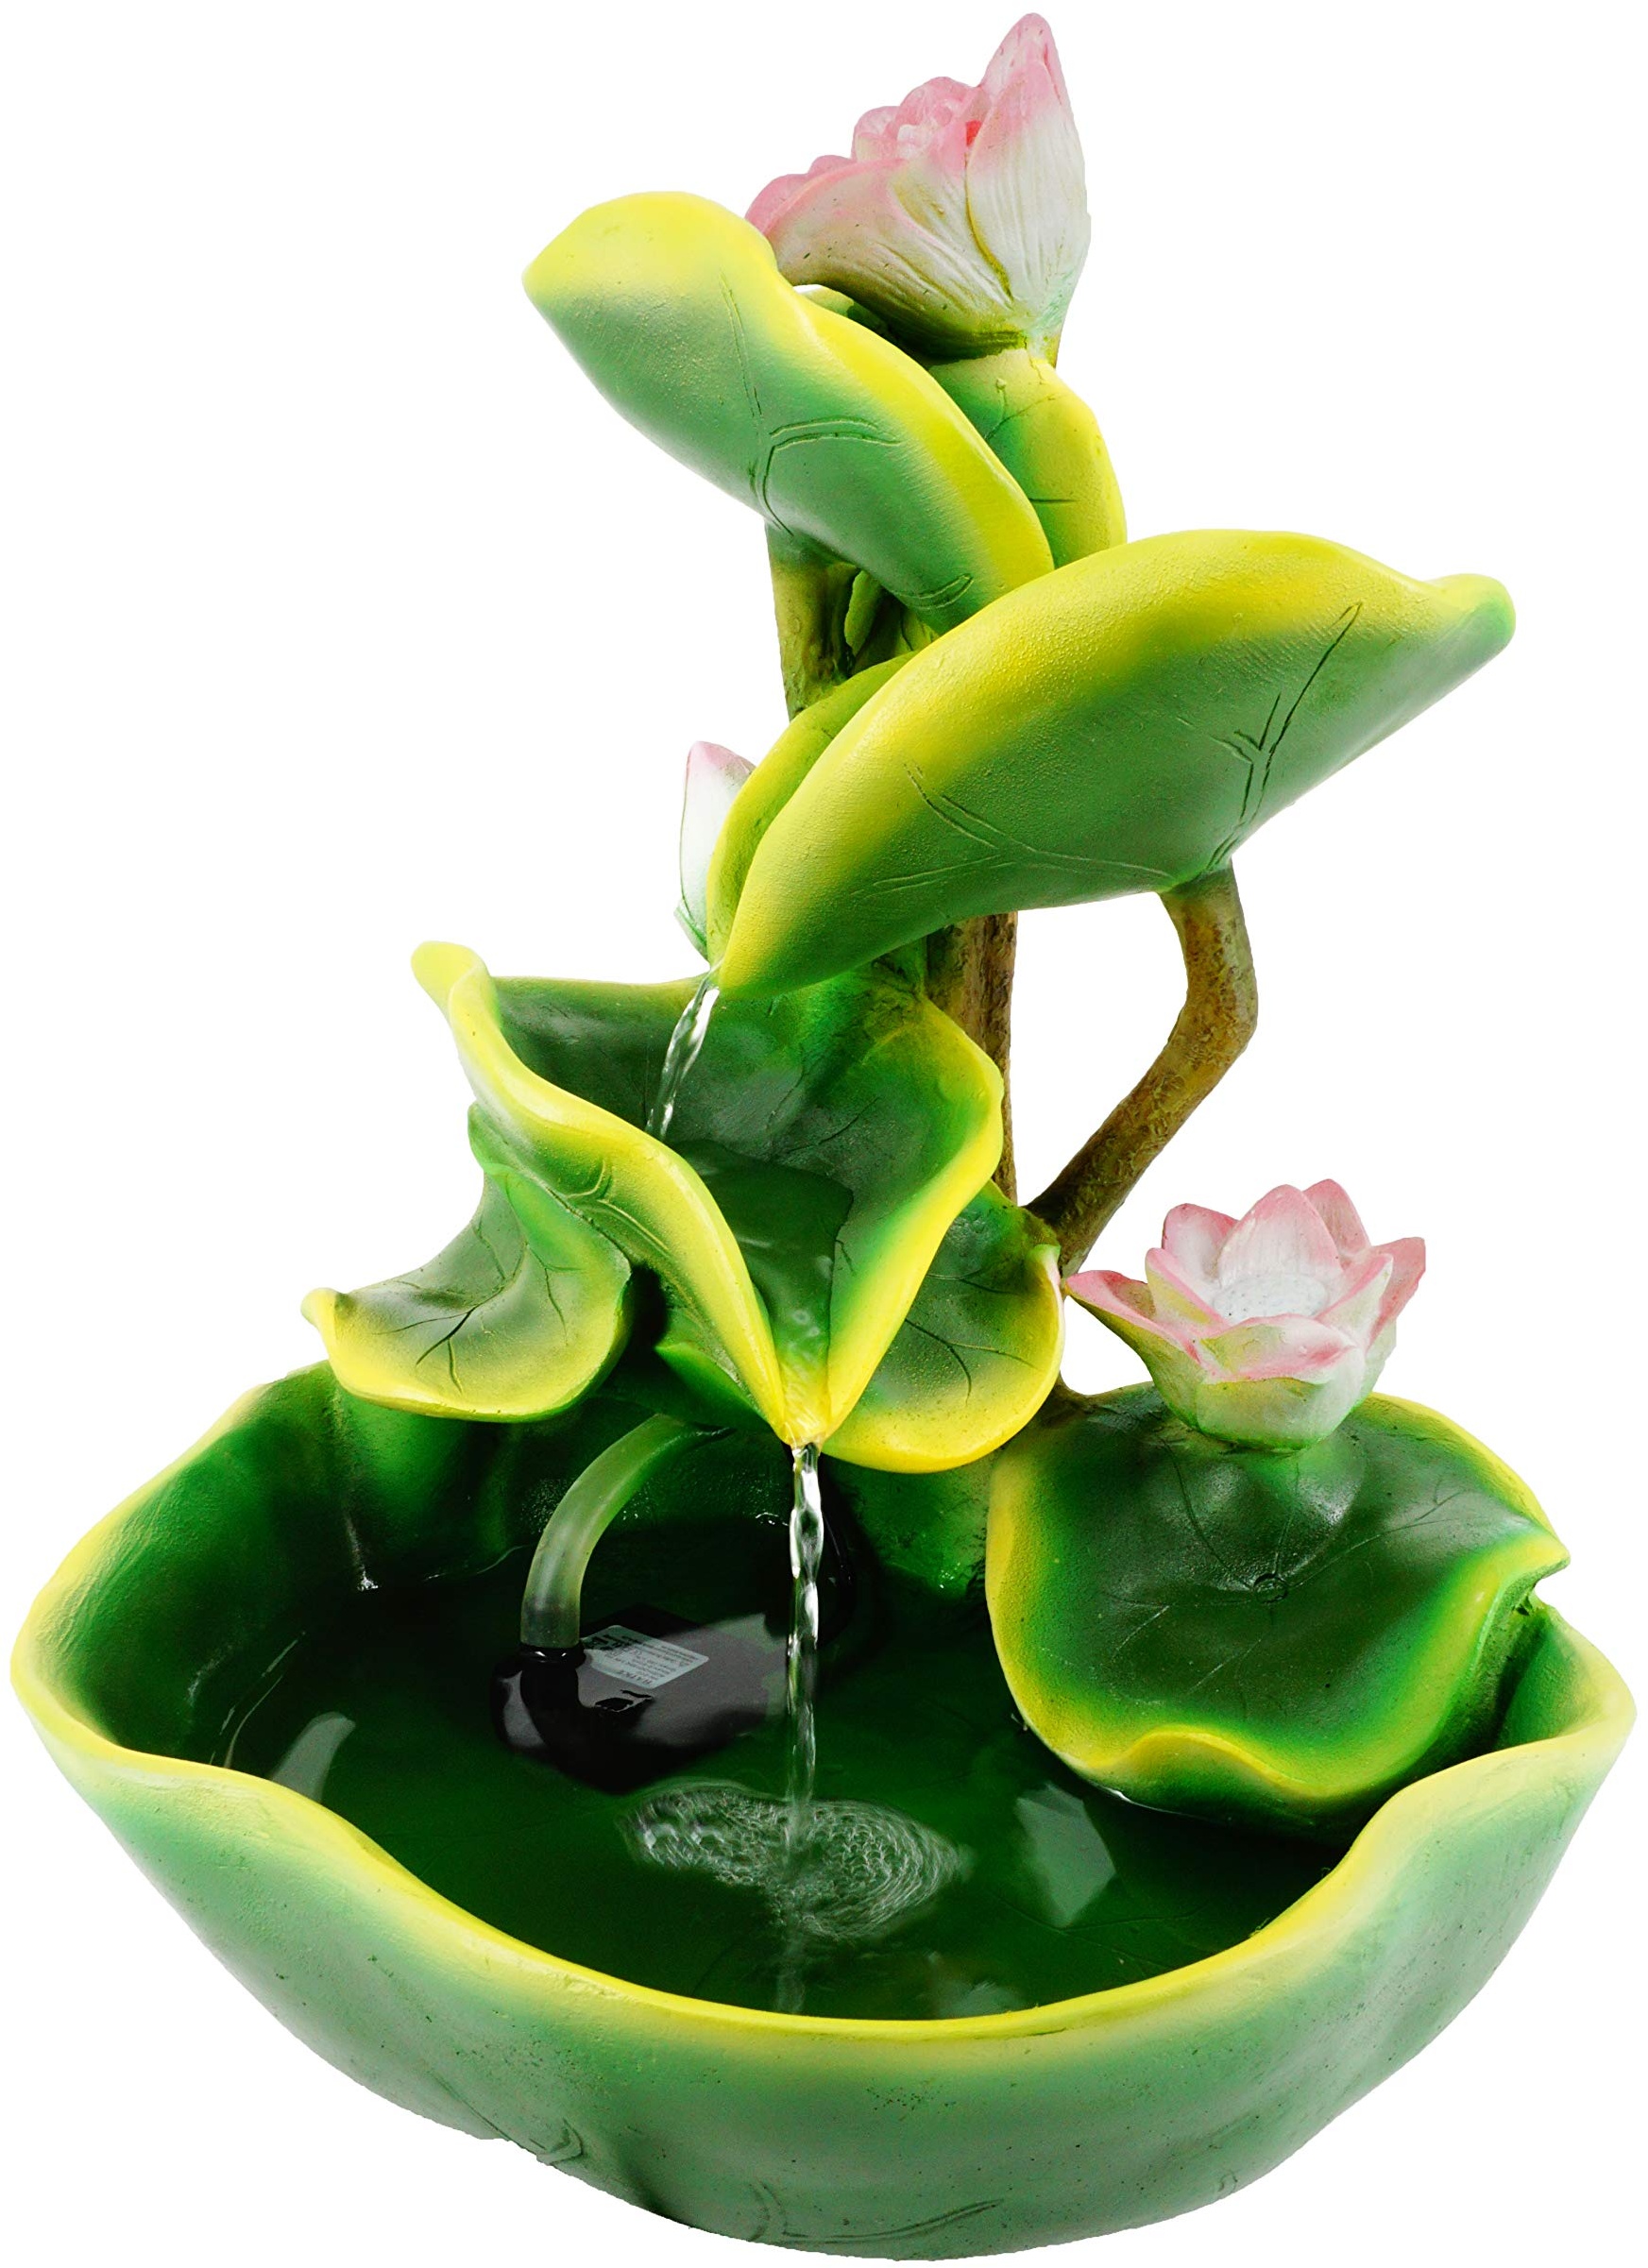 ABC Home Living Seerosen dekorativ wirkt beruhigend Luftbefeuchter, Polyresin, Zimmerbrunnen Wasserlilien, ca. 26 cm T x 27 cm B x 34 cm H